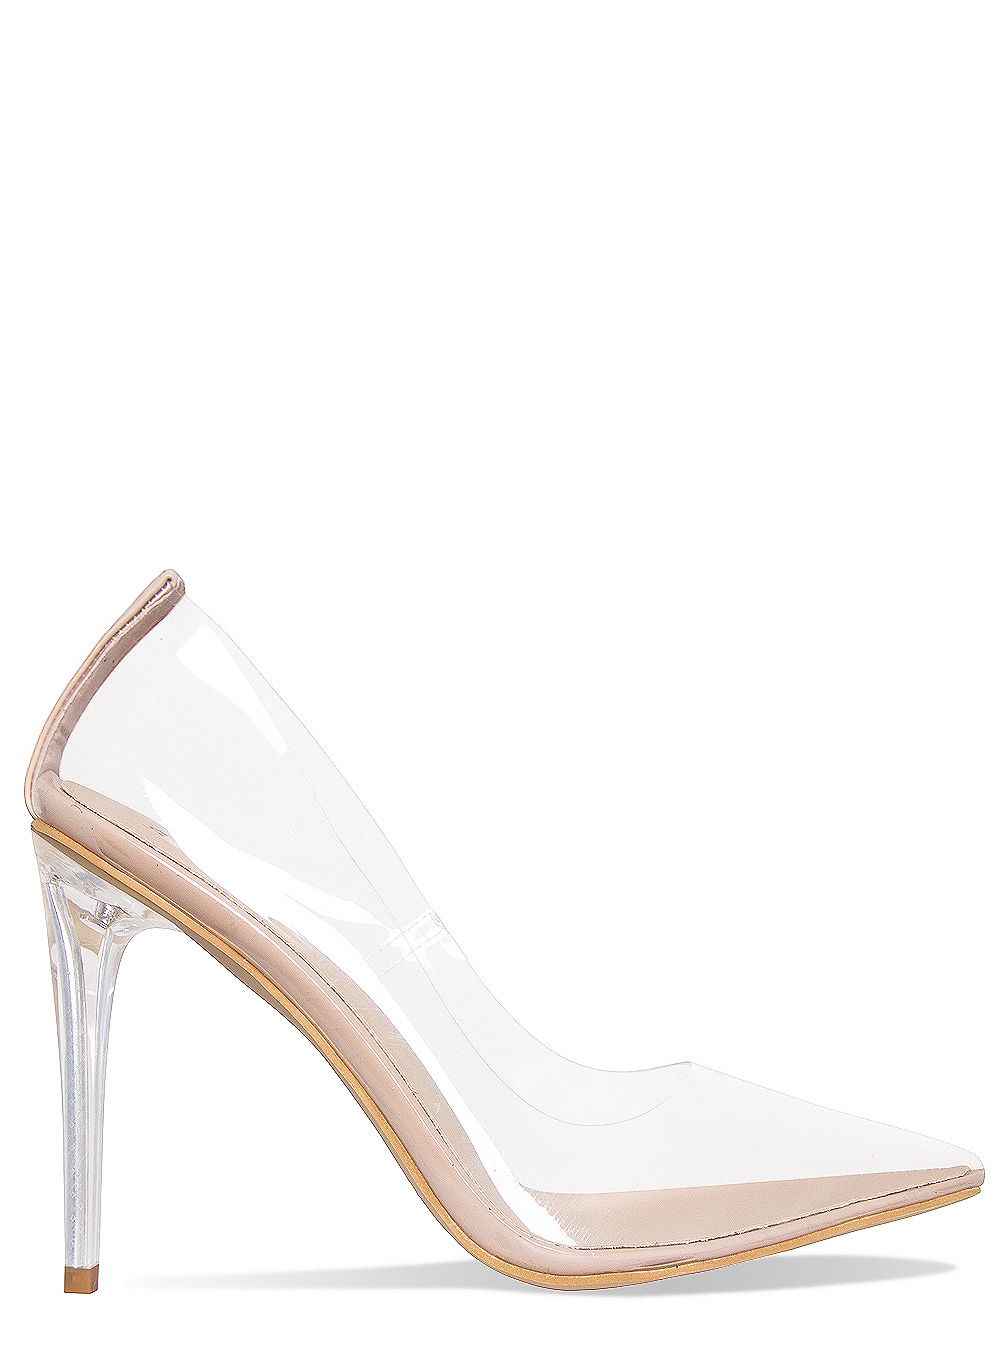 stiletto court heels